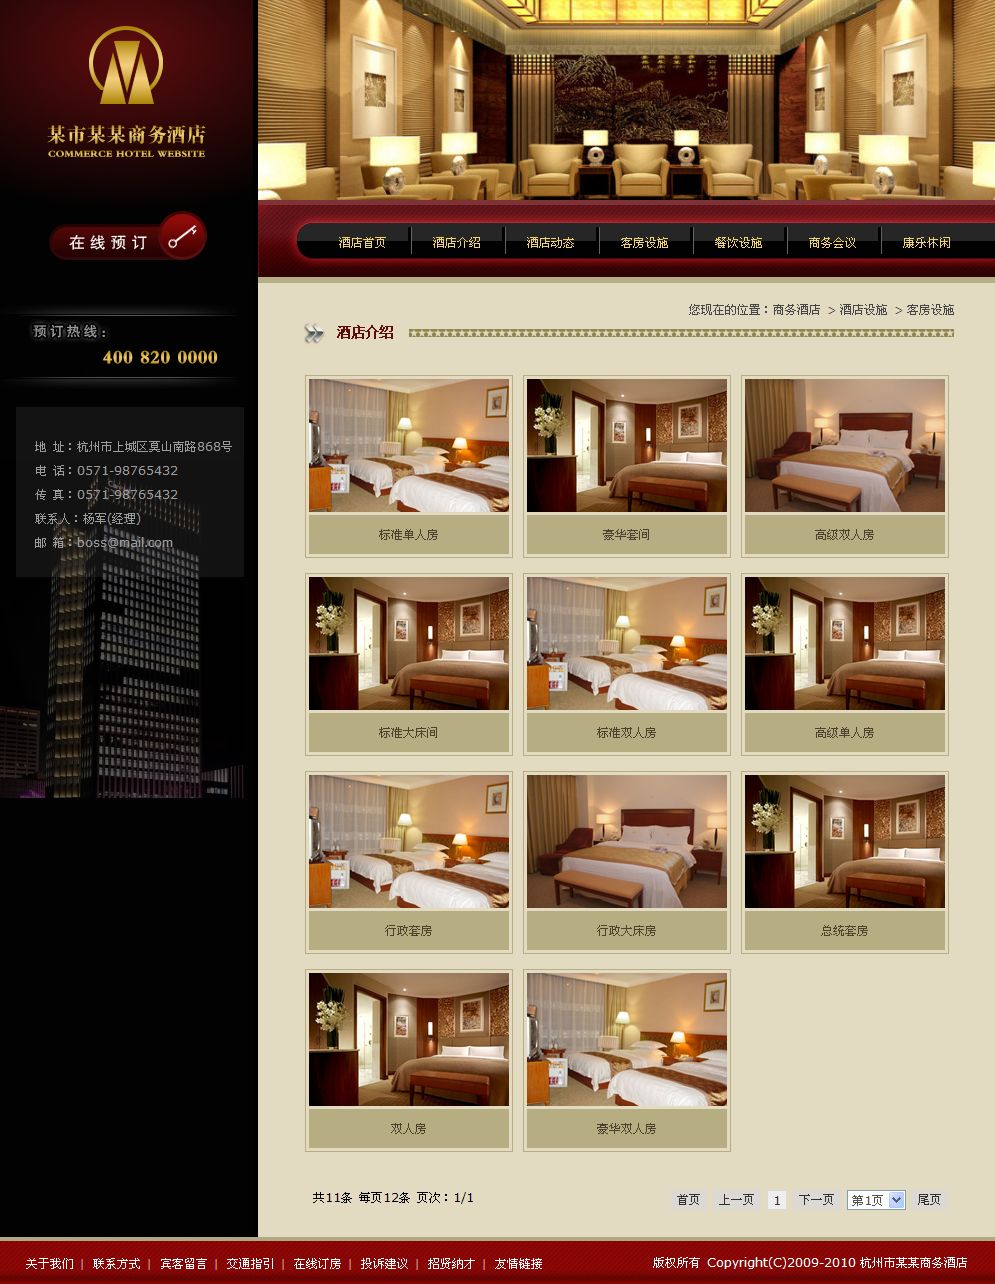 商务酒店宾馆网站产品列表页